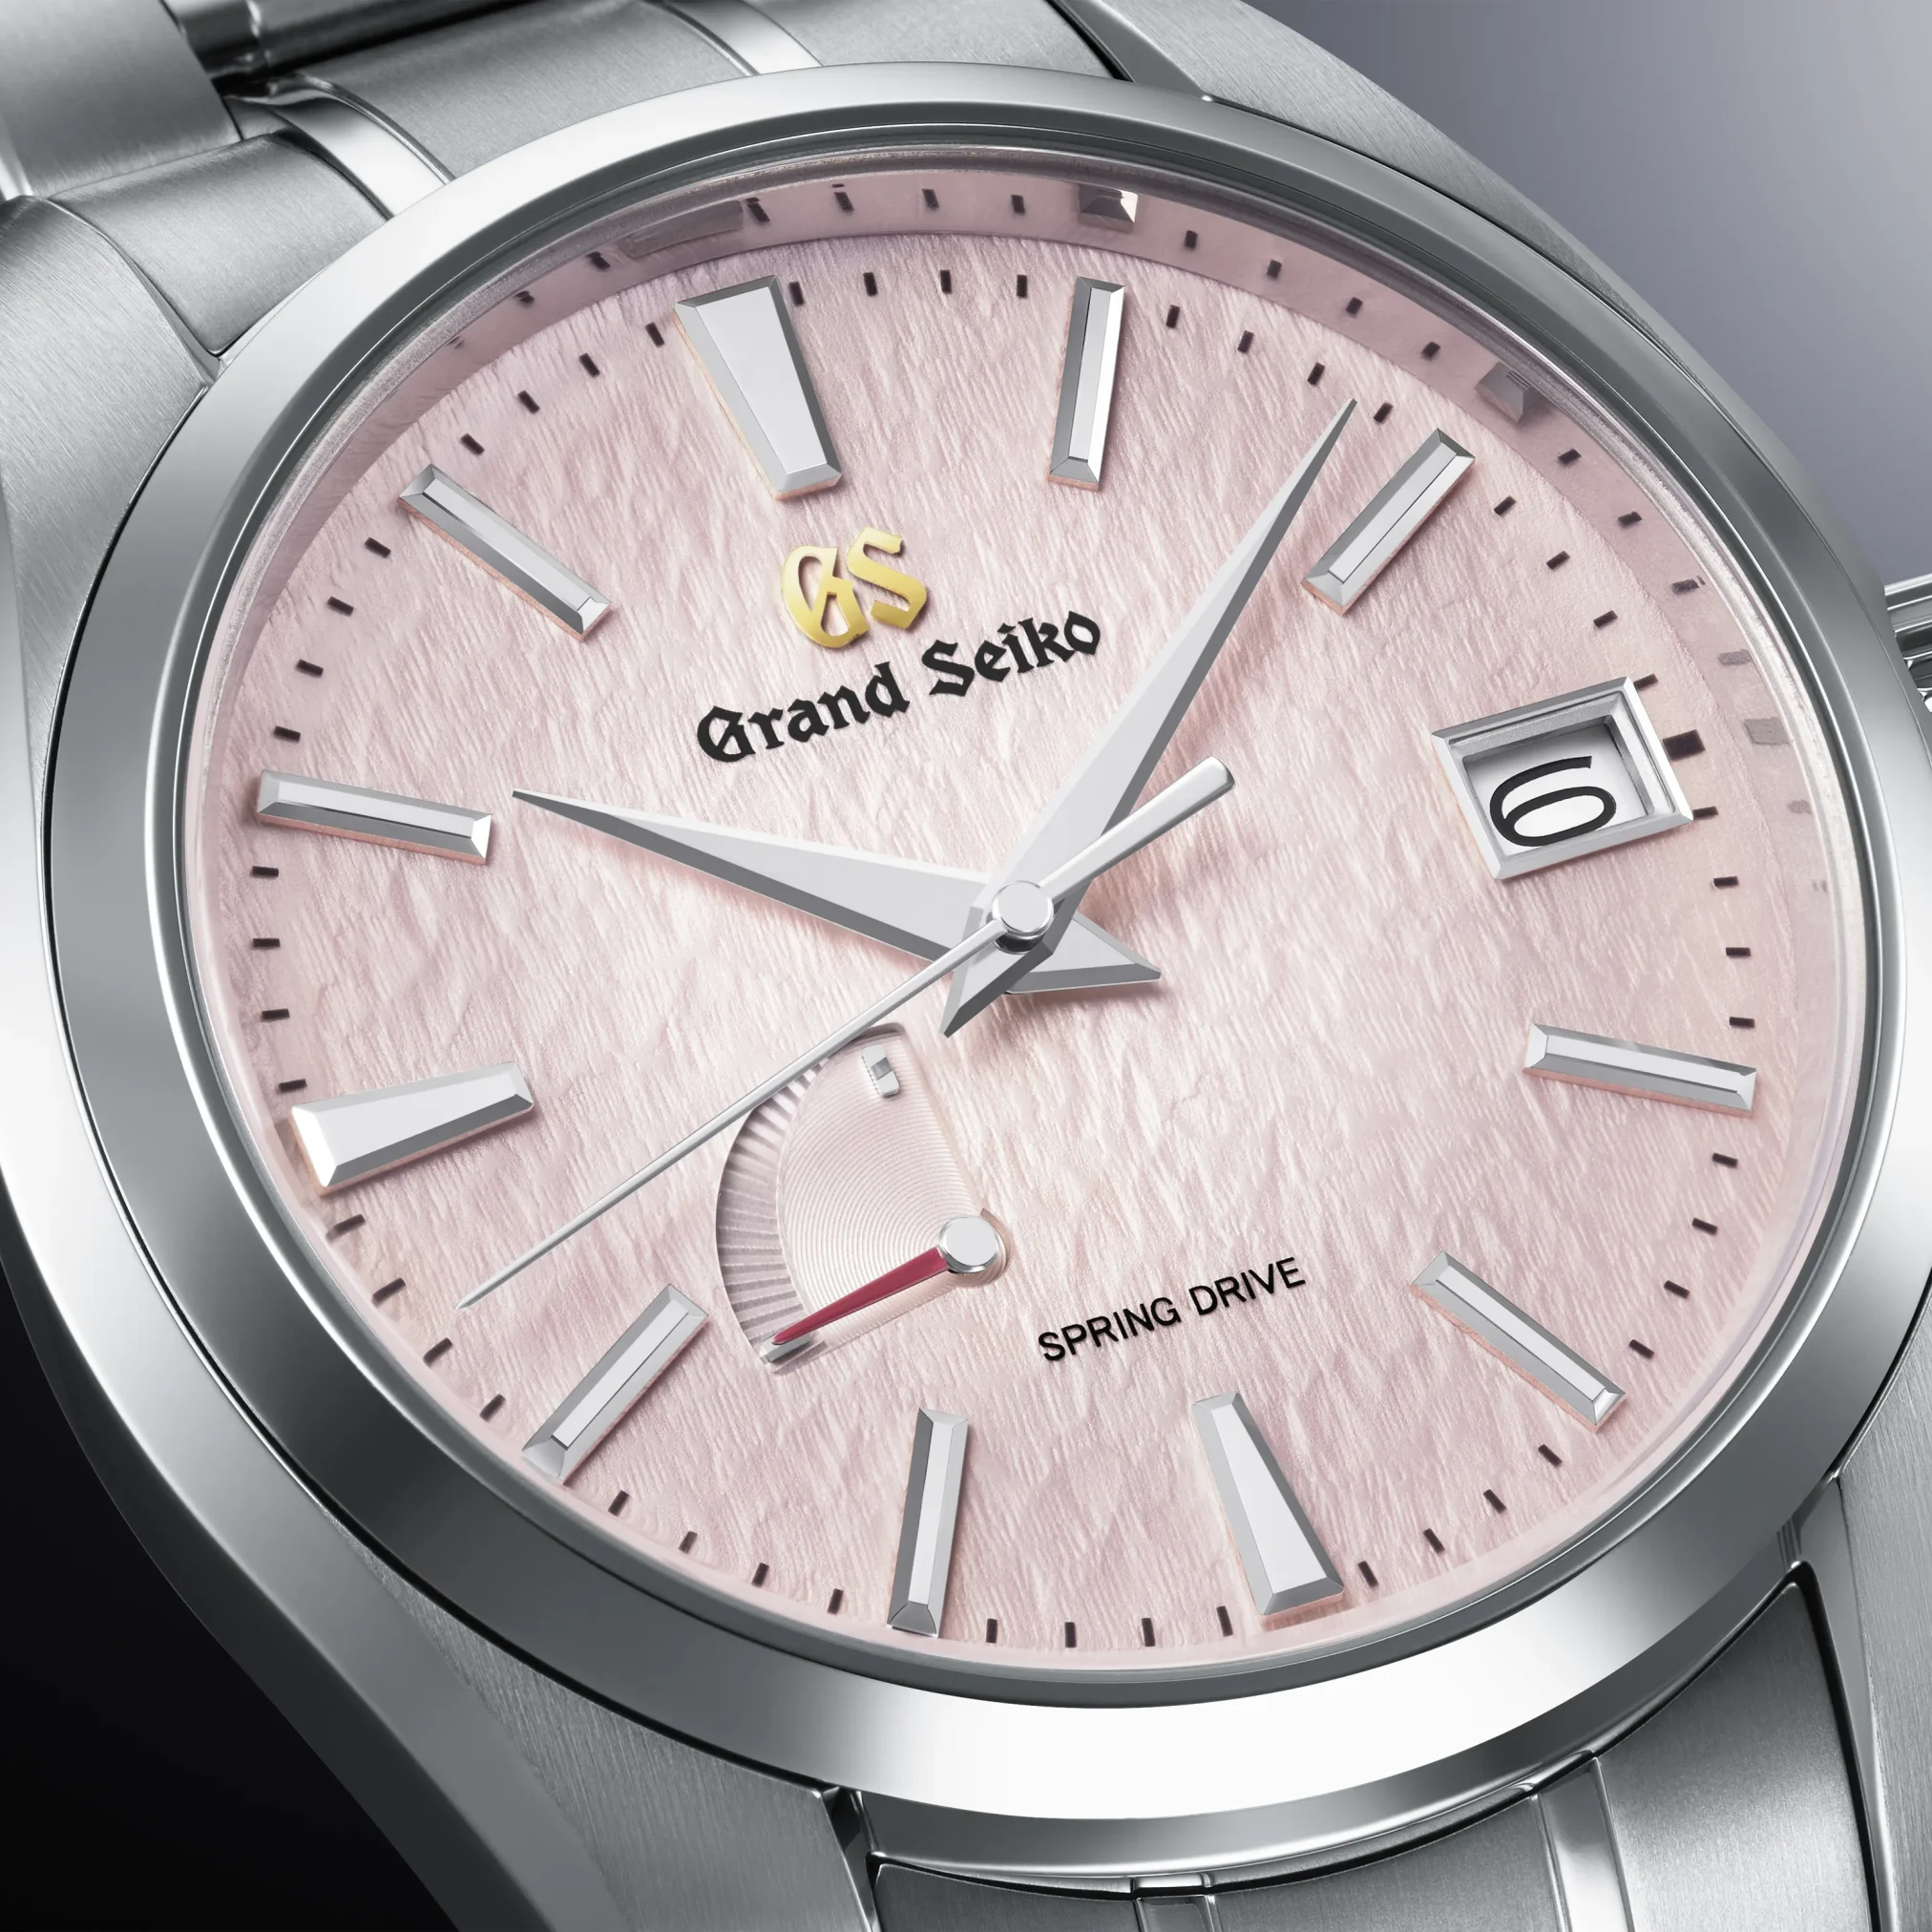 Đồng Hồ Grand Seiko Heritage Caliber 9R 20th Anniversary Limited Edition SBGA497 mặt số màu hồng. Dây đeo bằng titanium. Thân vỏ bằng titanium.